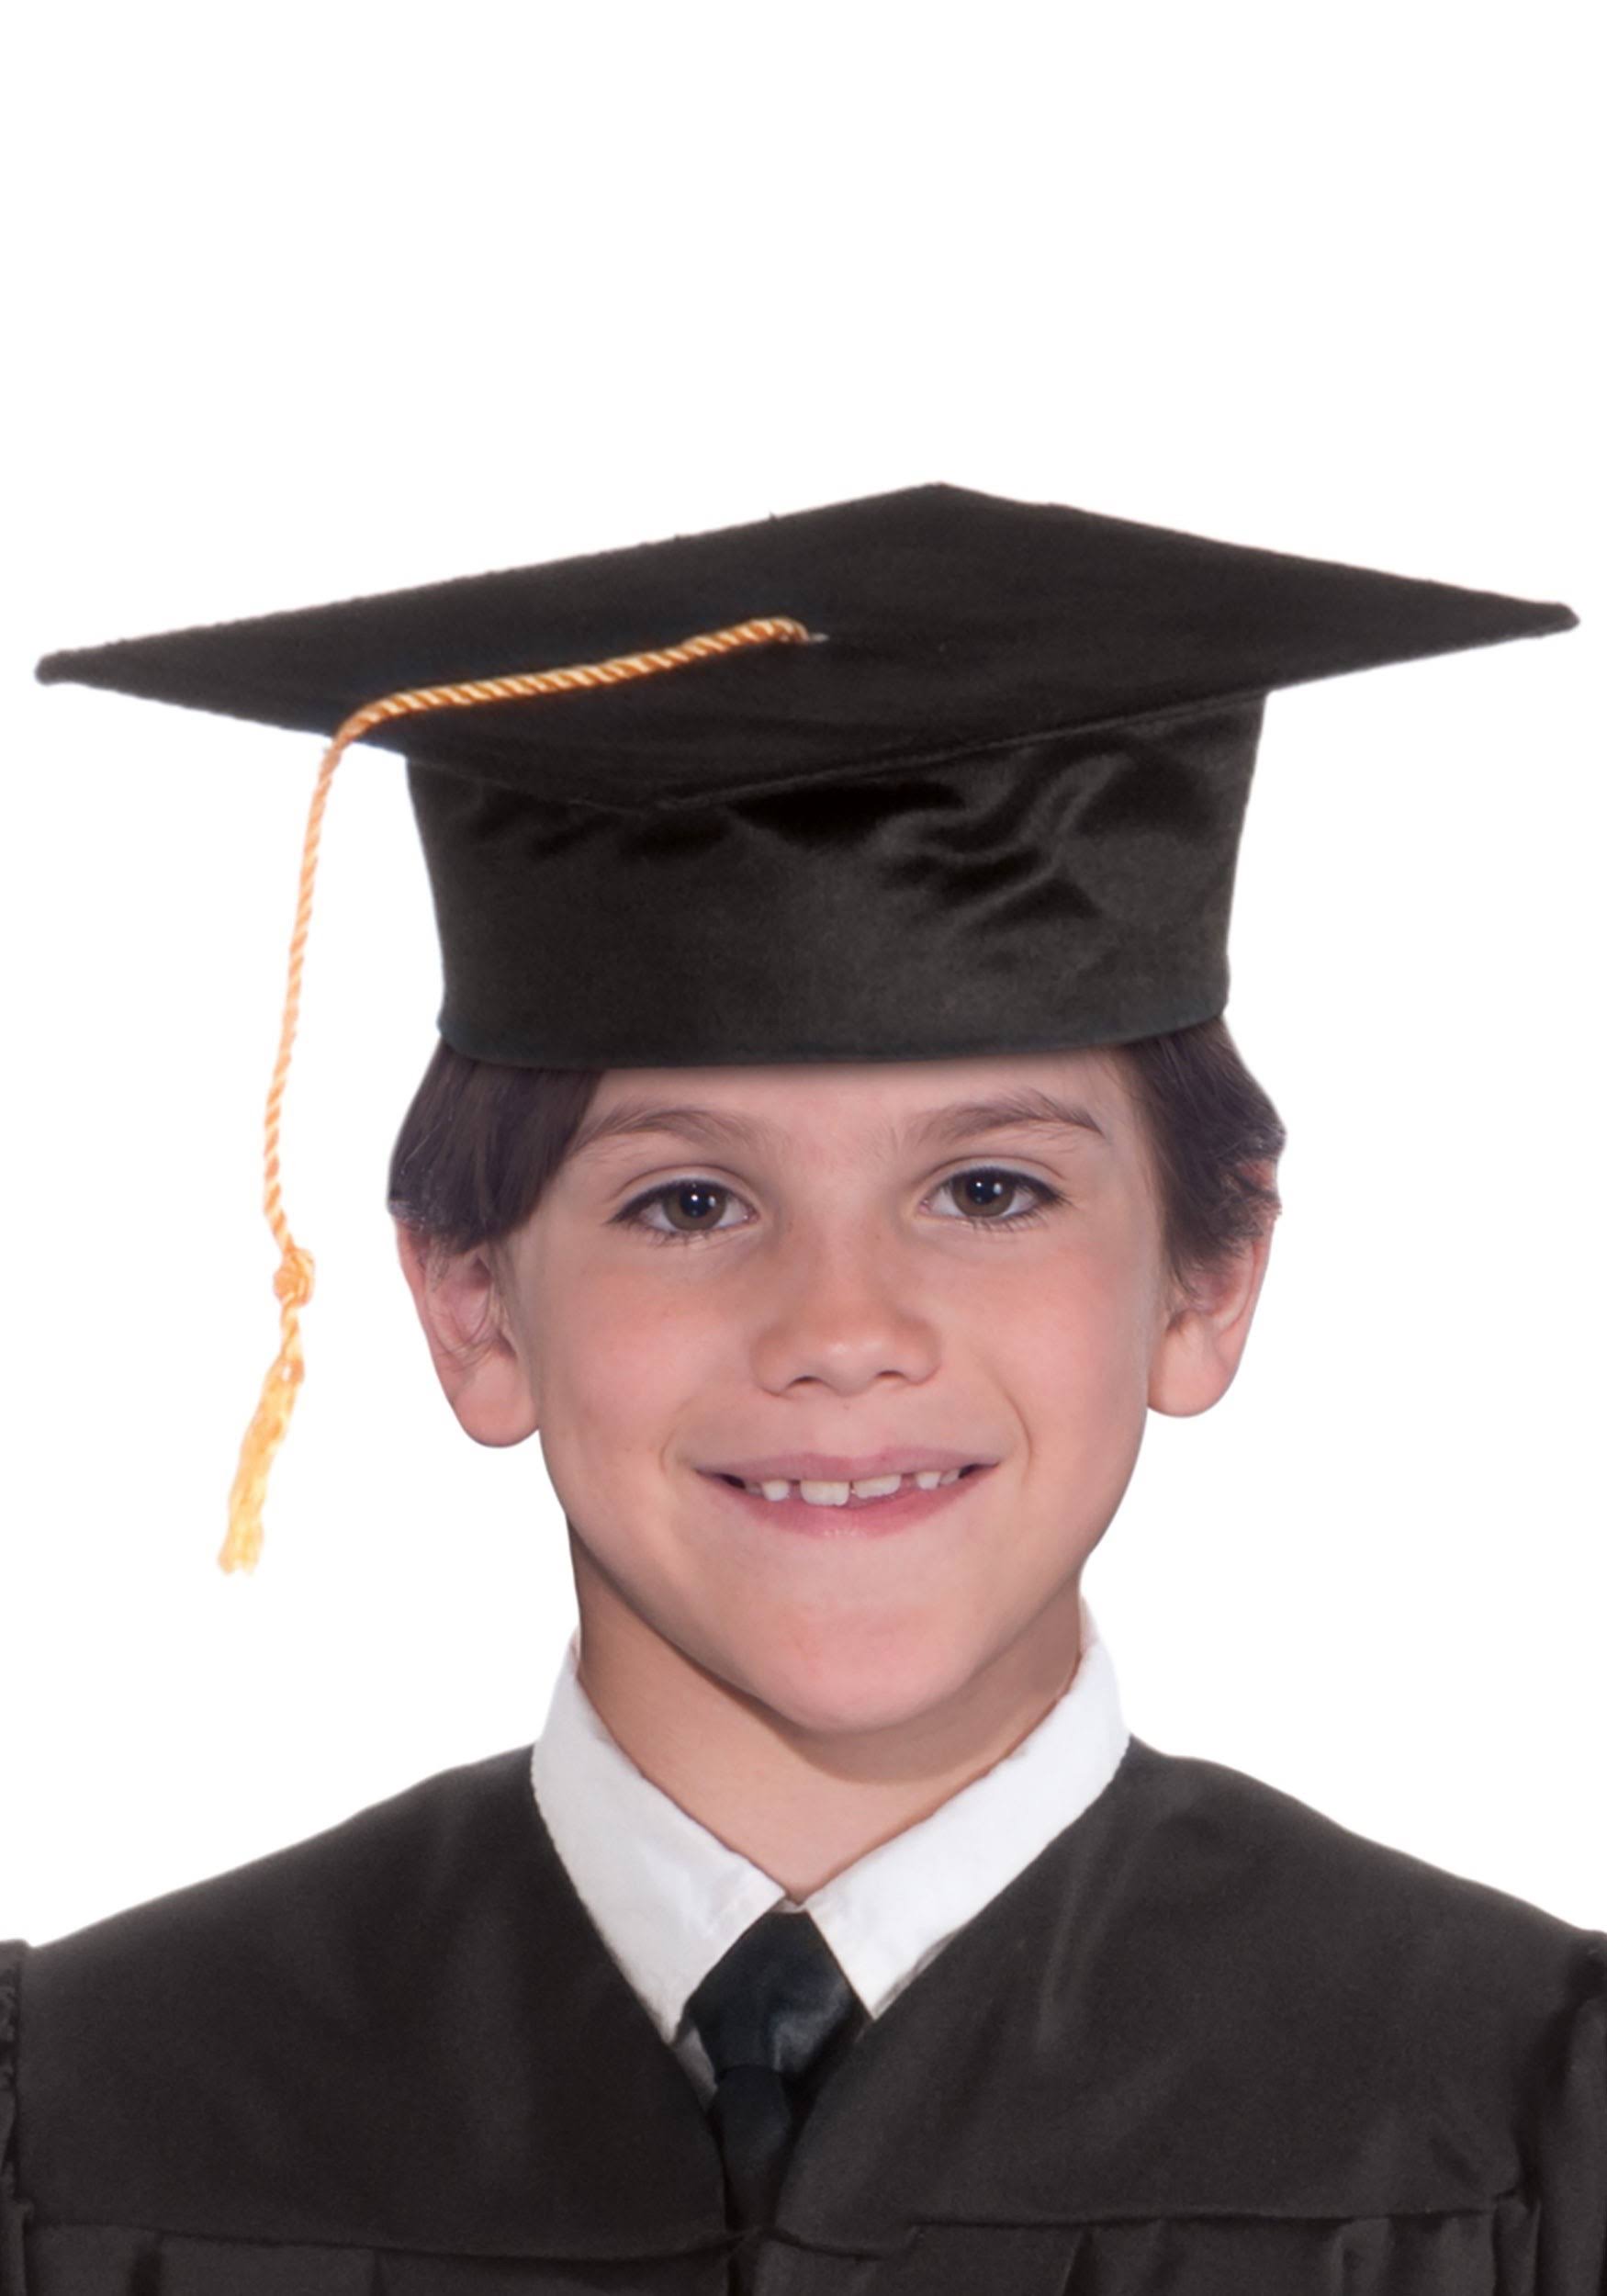 Black Graduation Child Cap